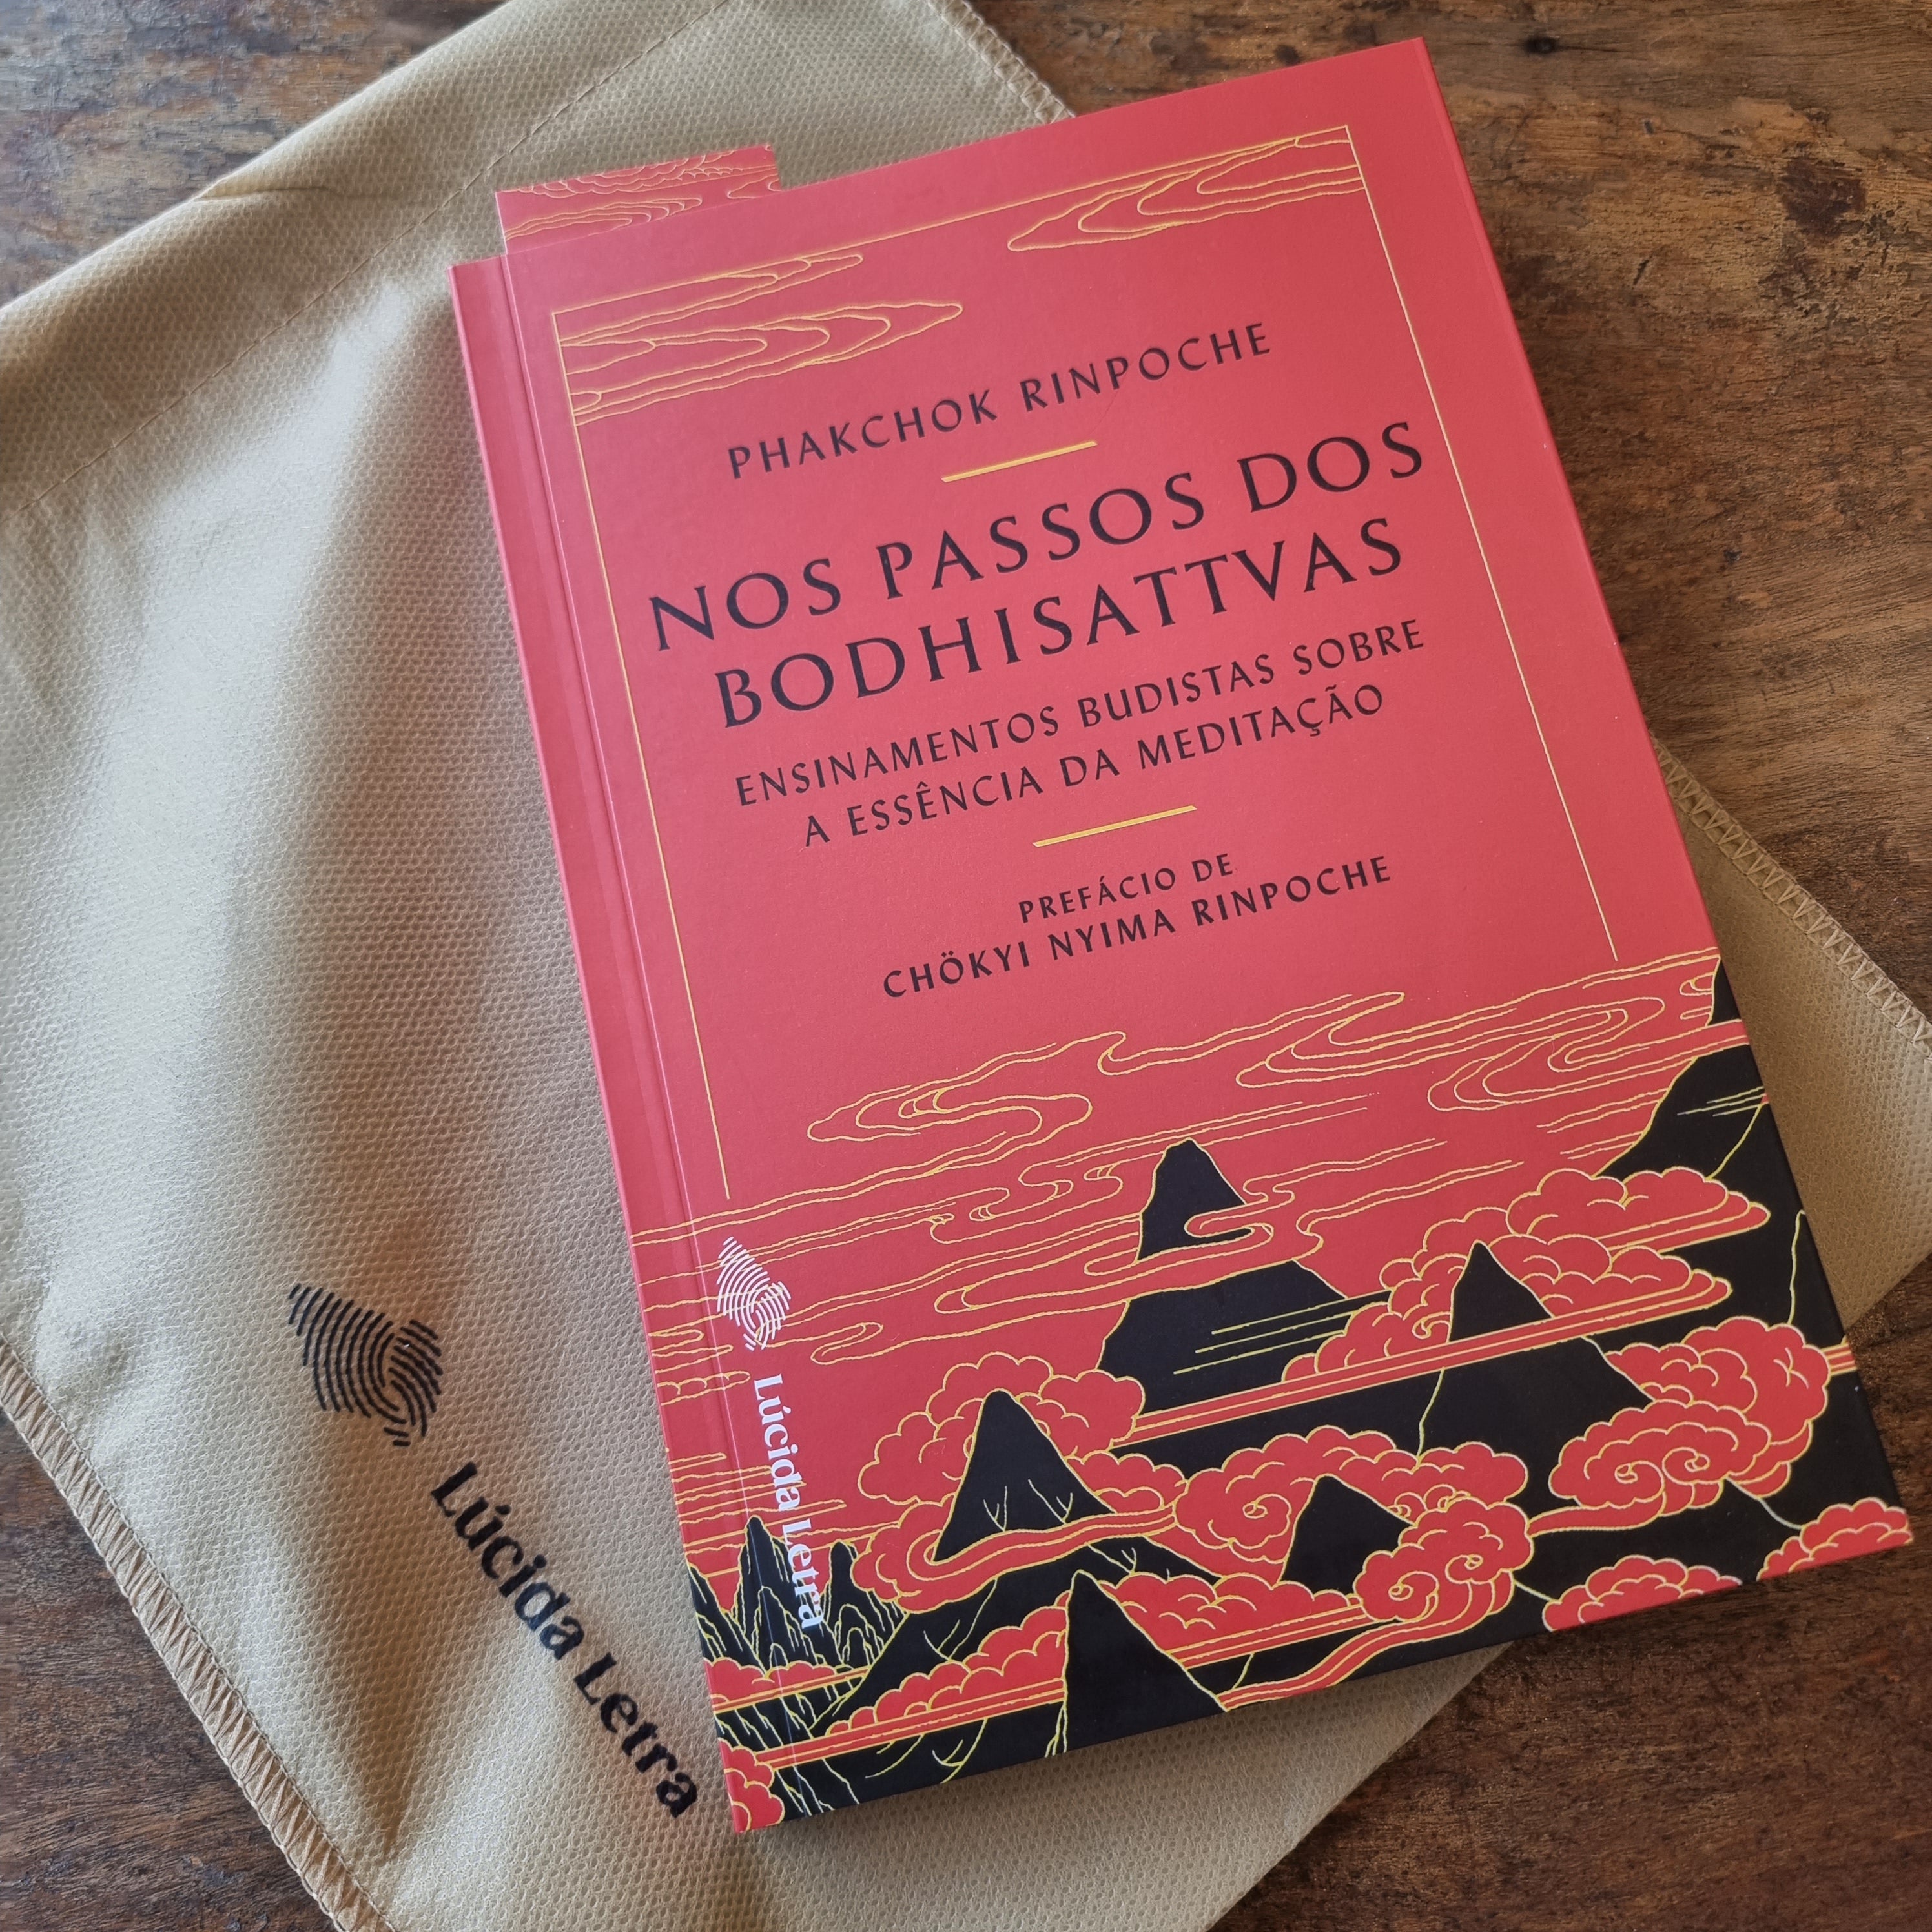 Livro "Nos passos dos bodhisattvas" e sacolinha da Lúcida Letra